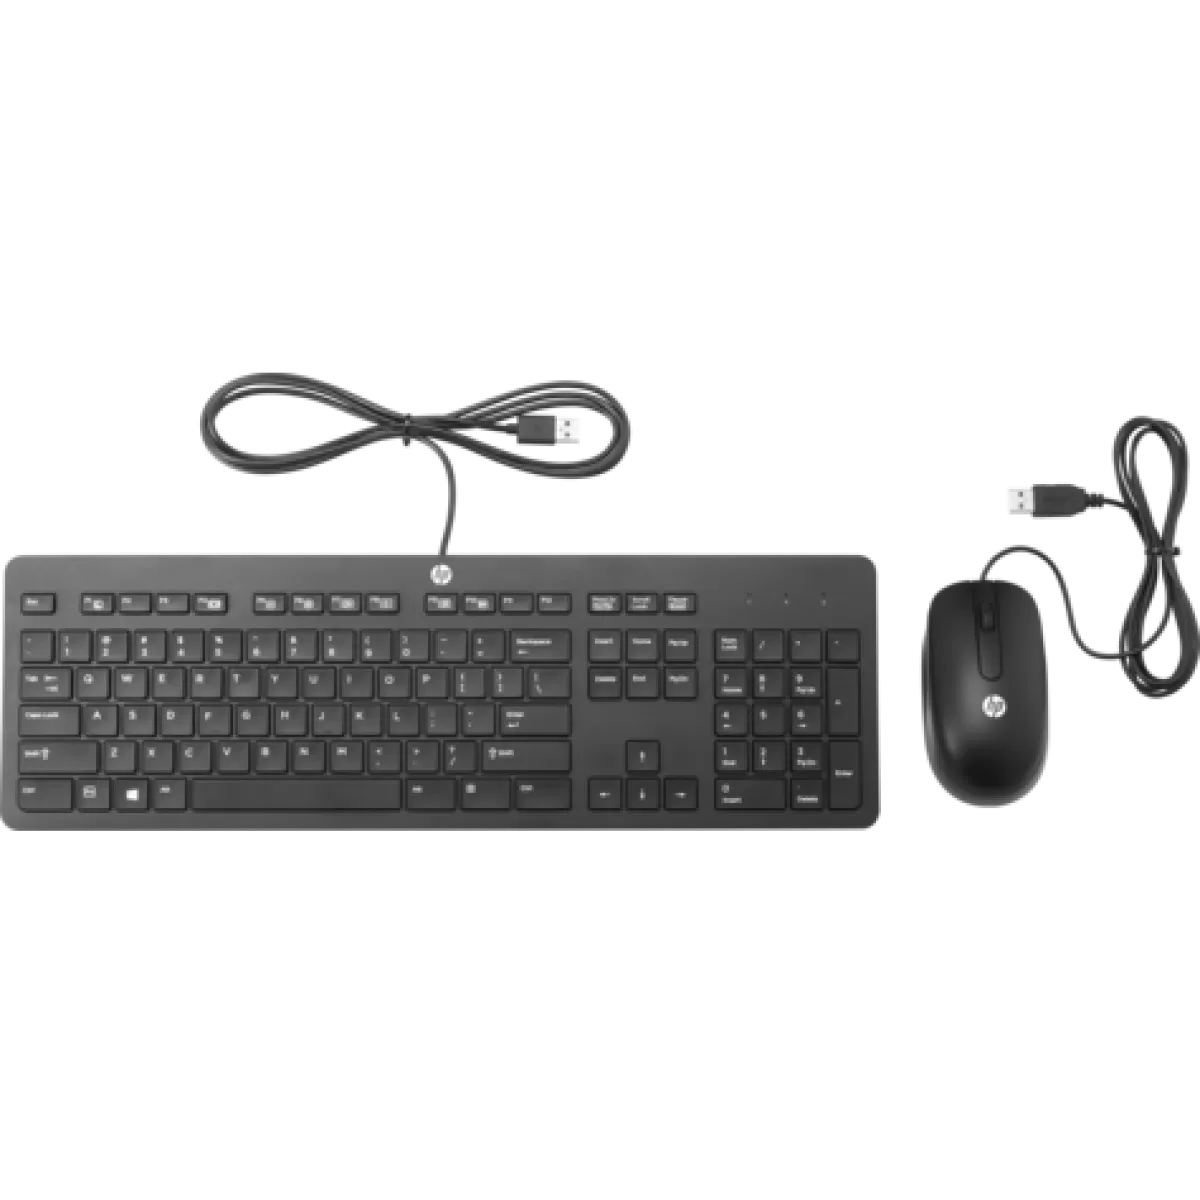 Клавиатура HP Slim USB Keyboard and Mouse